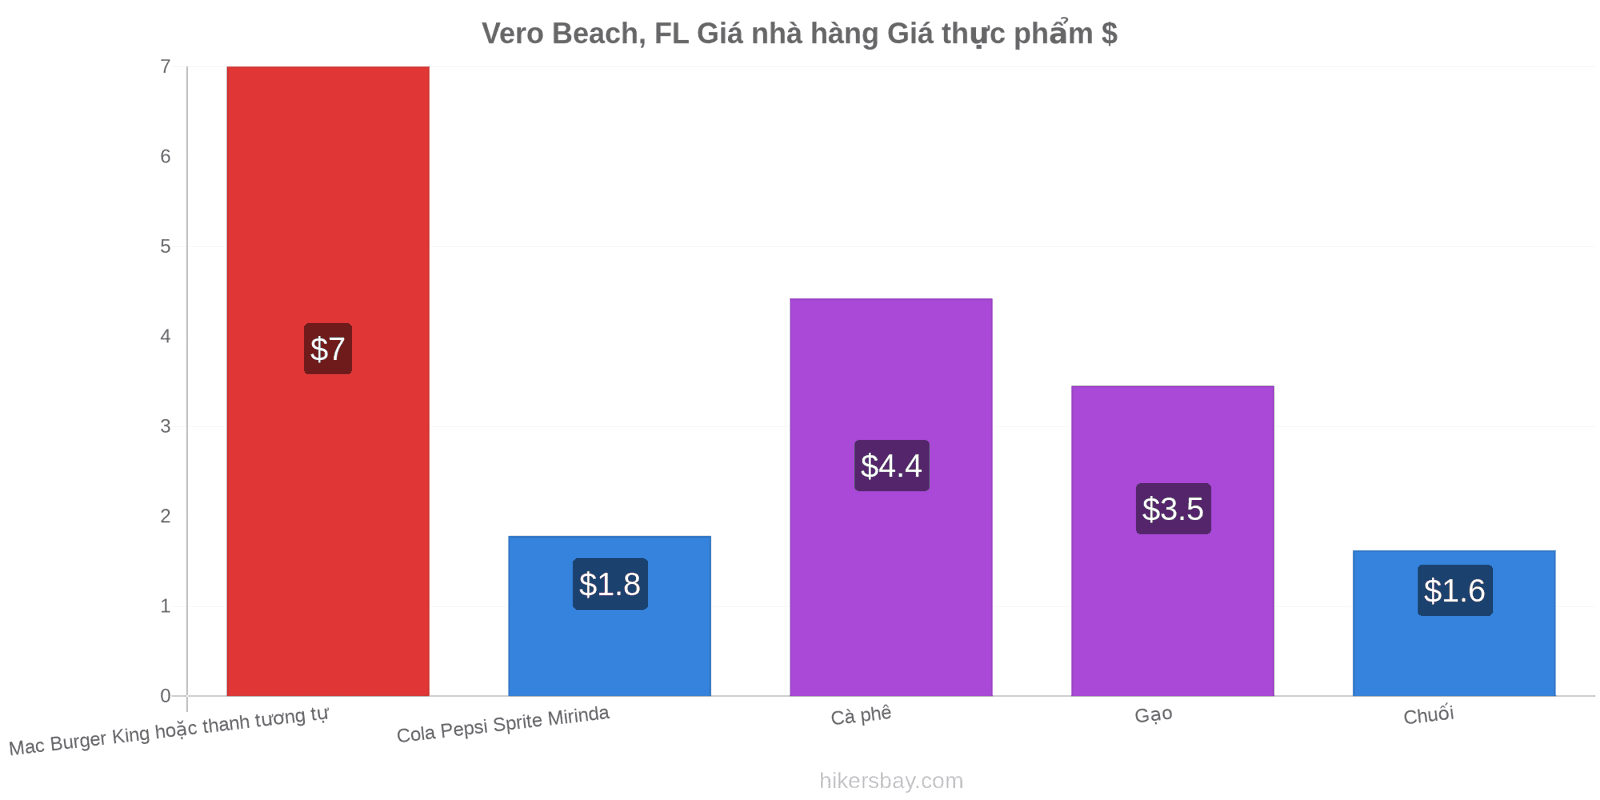 Vero Beach, FL thay đổi giá cả hikersbay.com